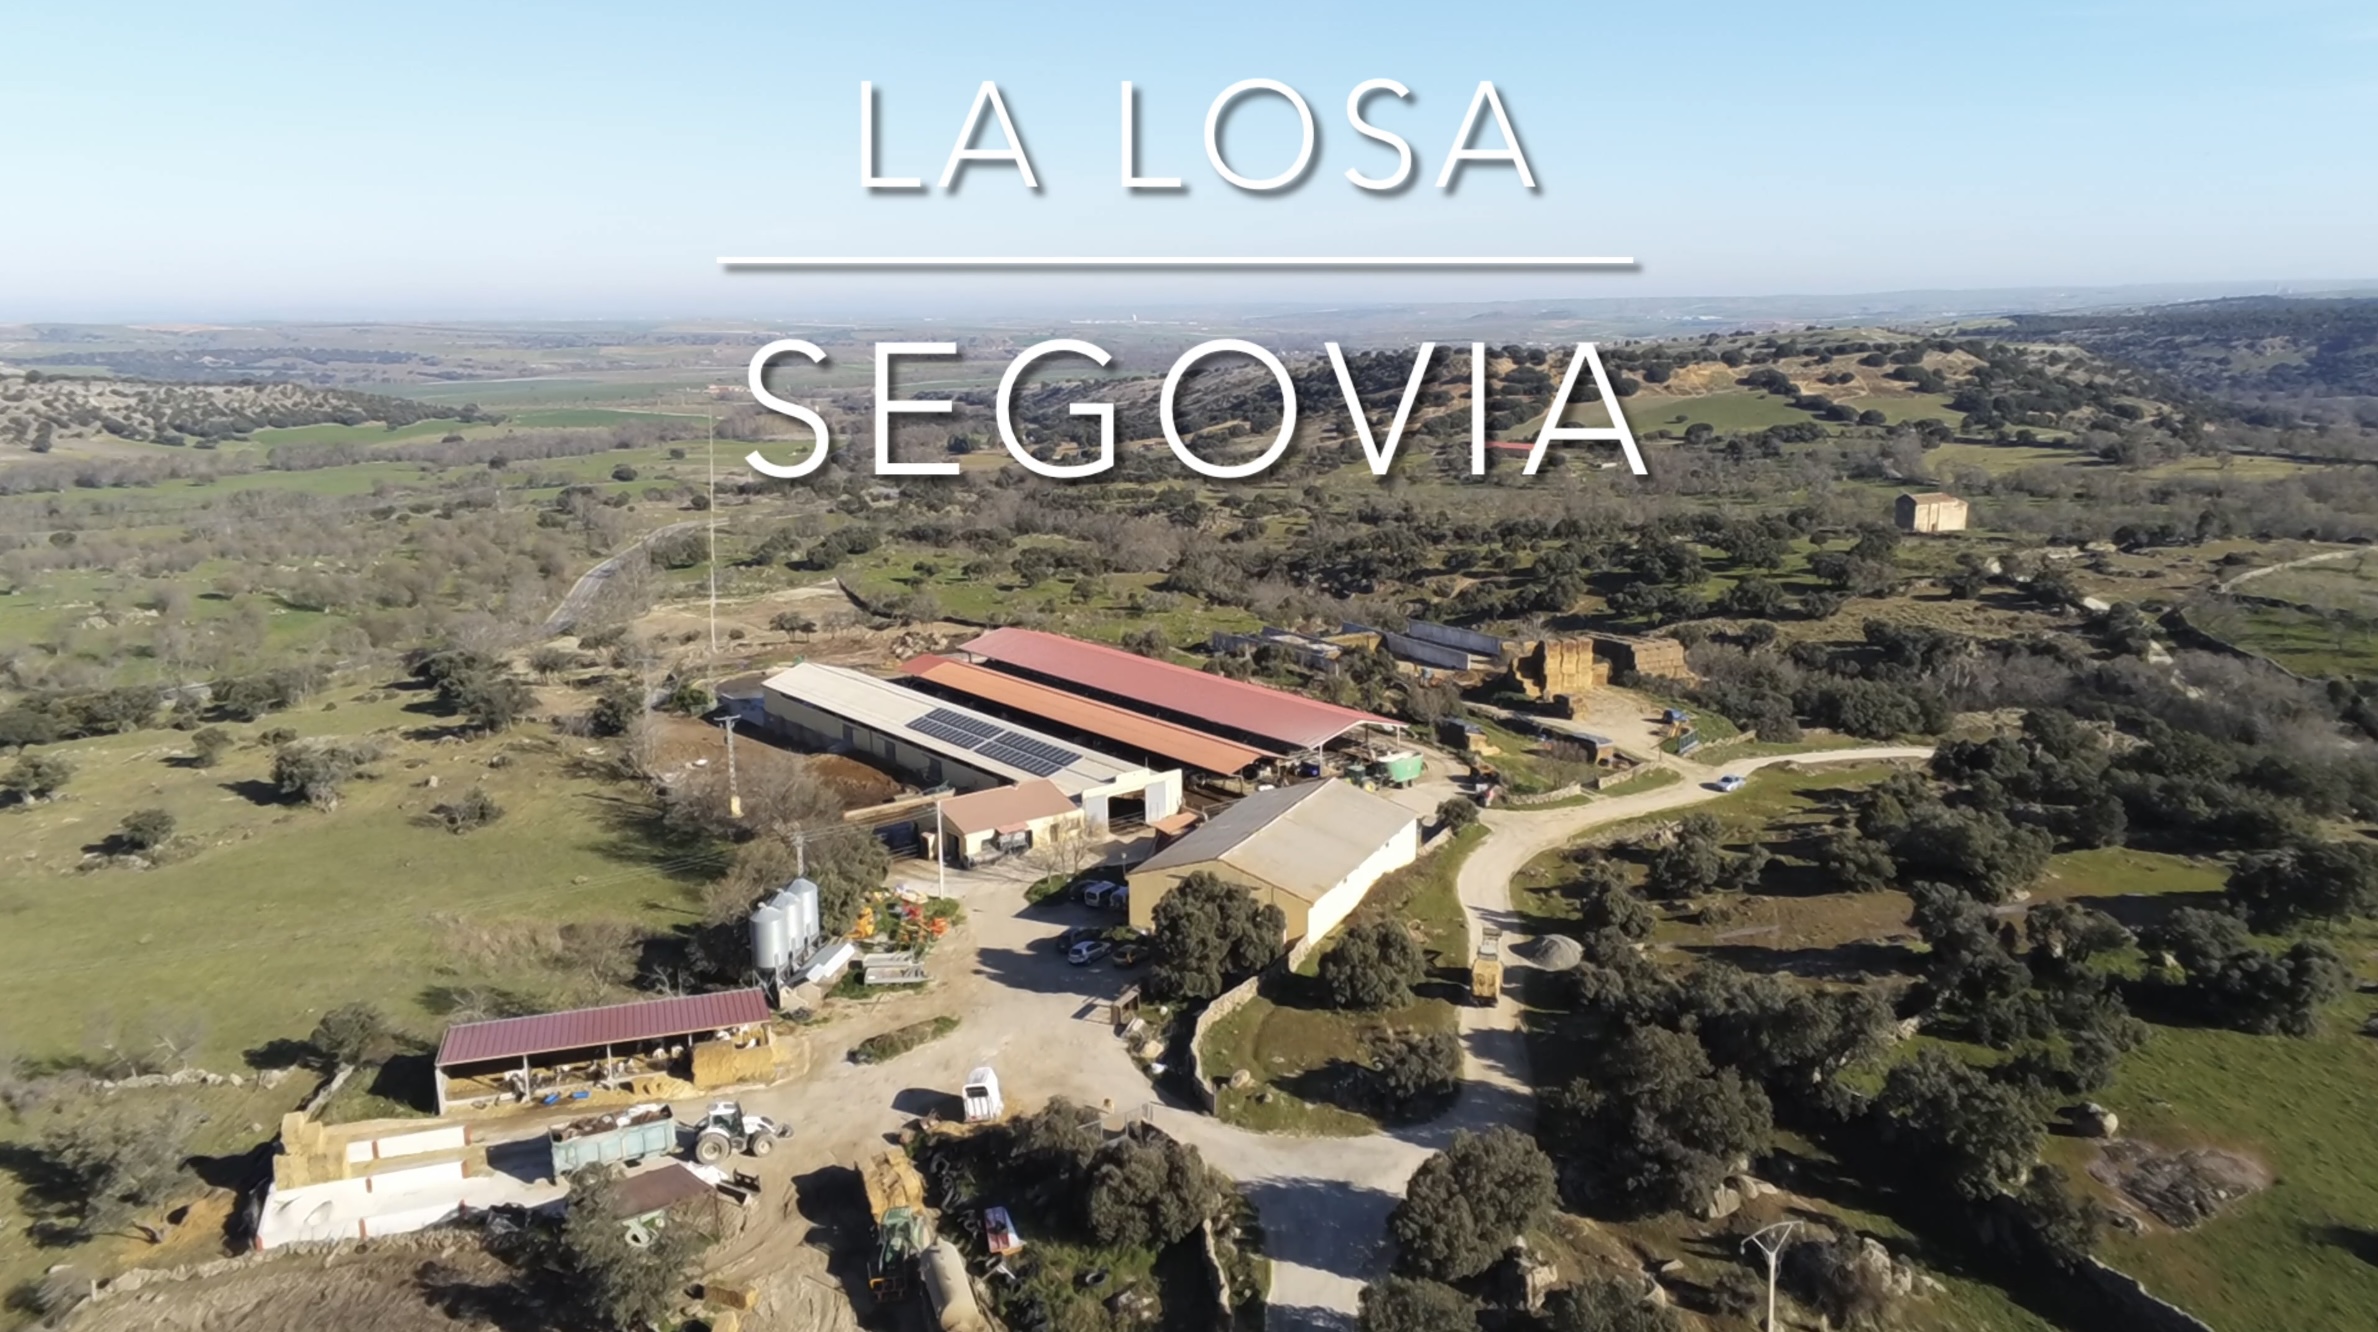 Instalación de autoconsumo en explotación ganadera y láctea La Losa